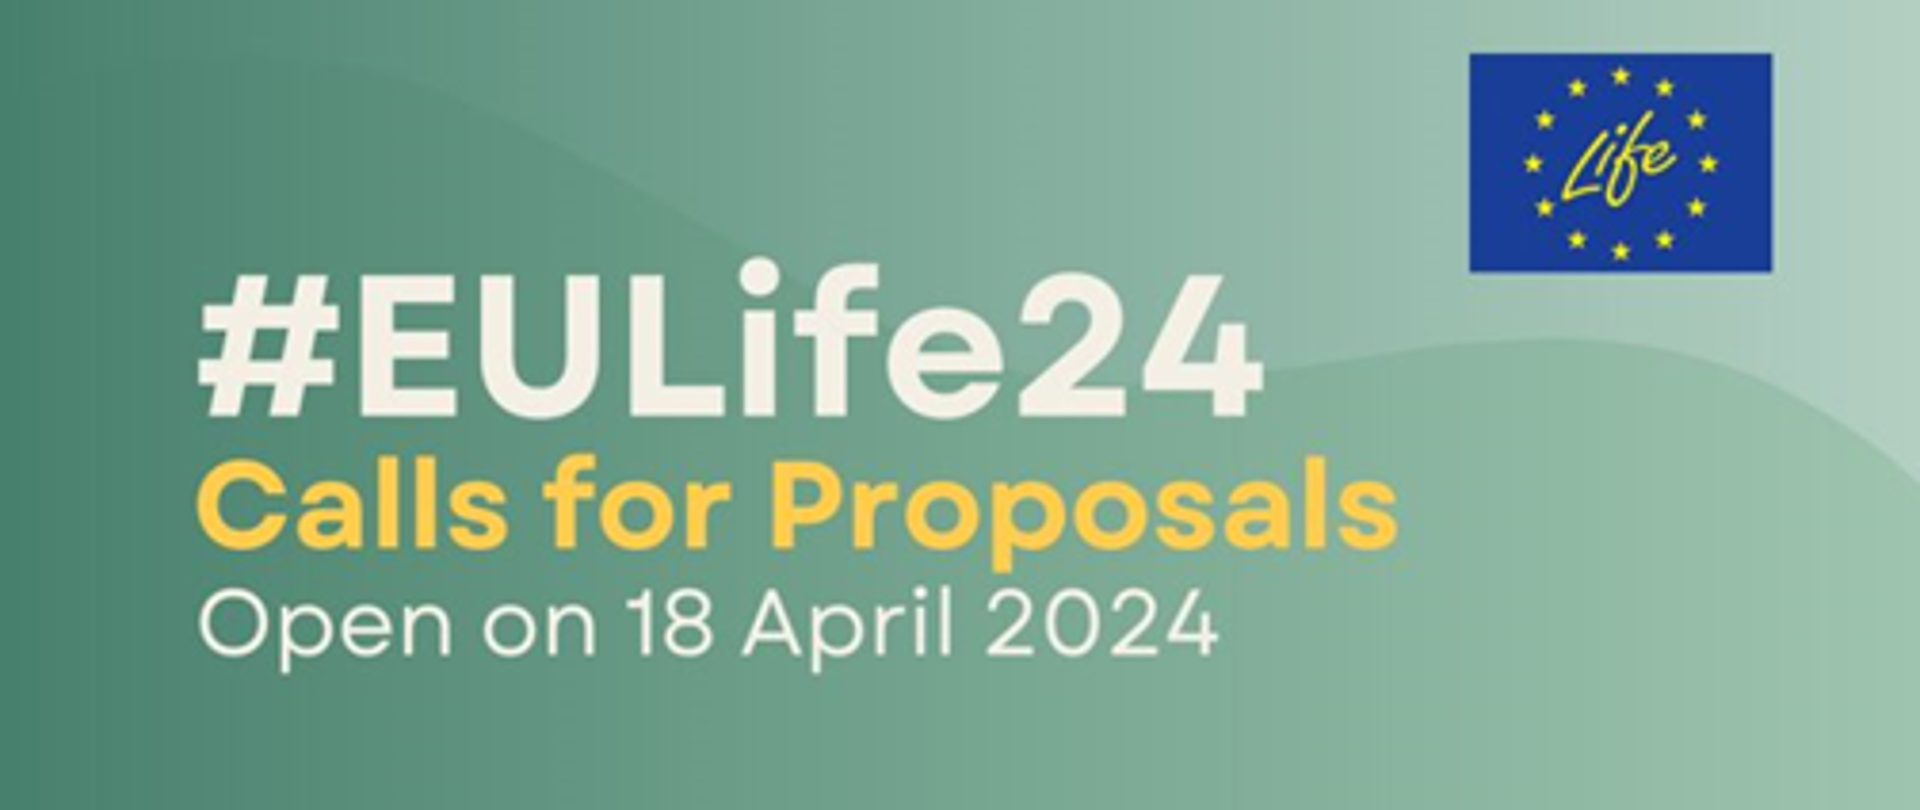 EU Life 24 . Calls for Proposals. Open on 18 April 2024